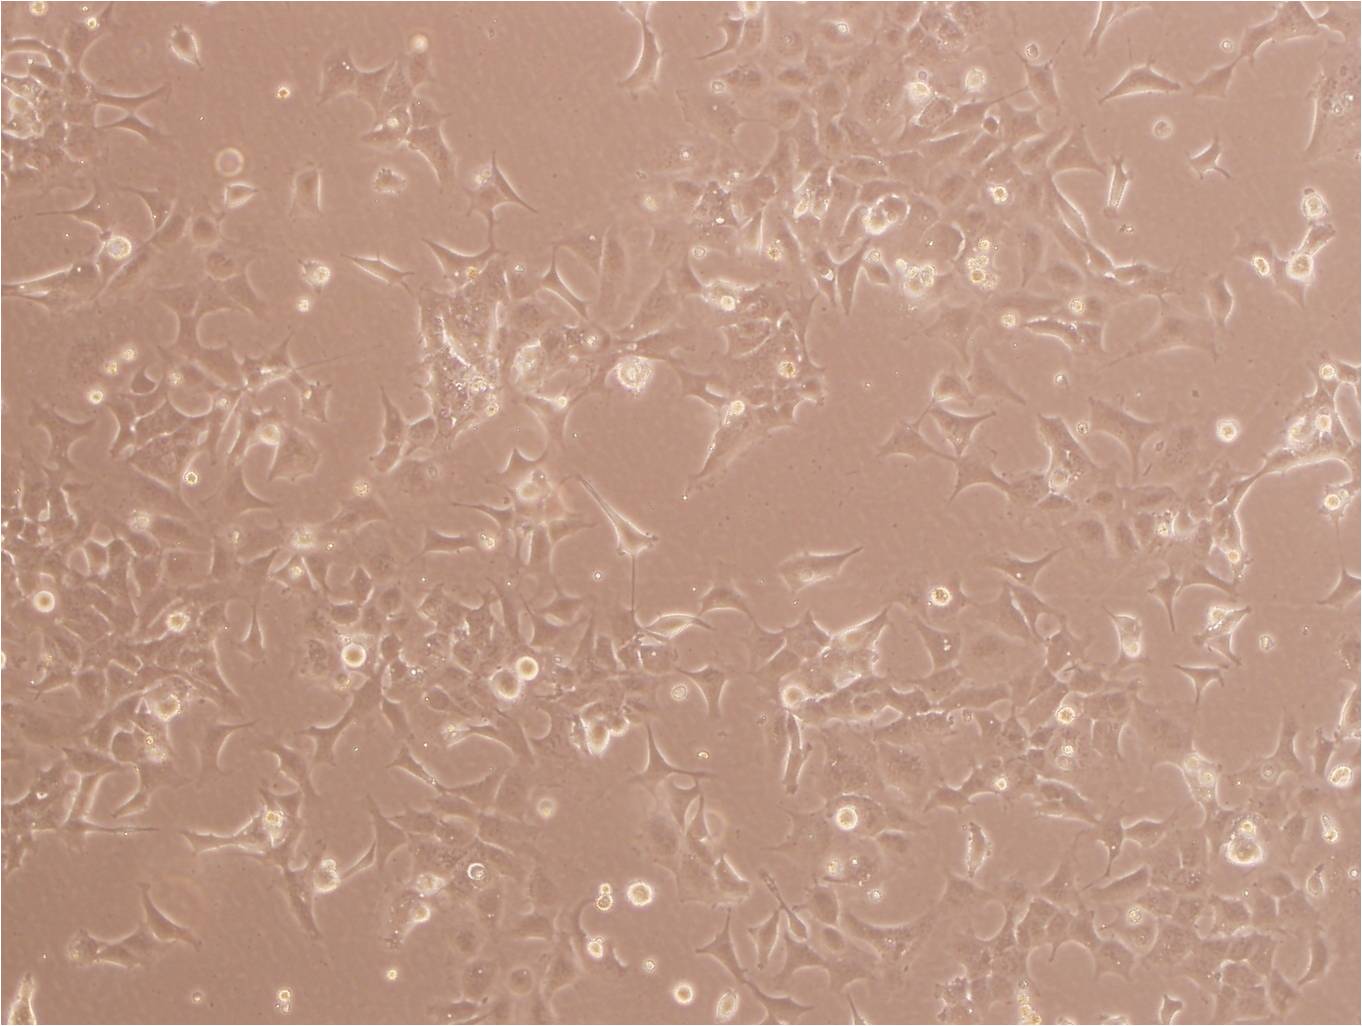 TE-9 Cells(赠送Str鉴定报告)|人食管癌细胞